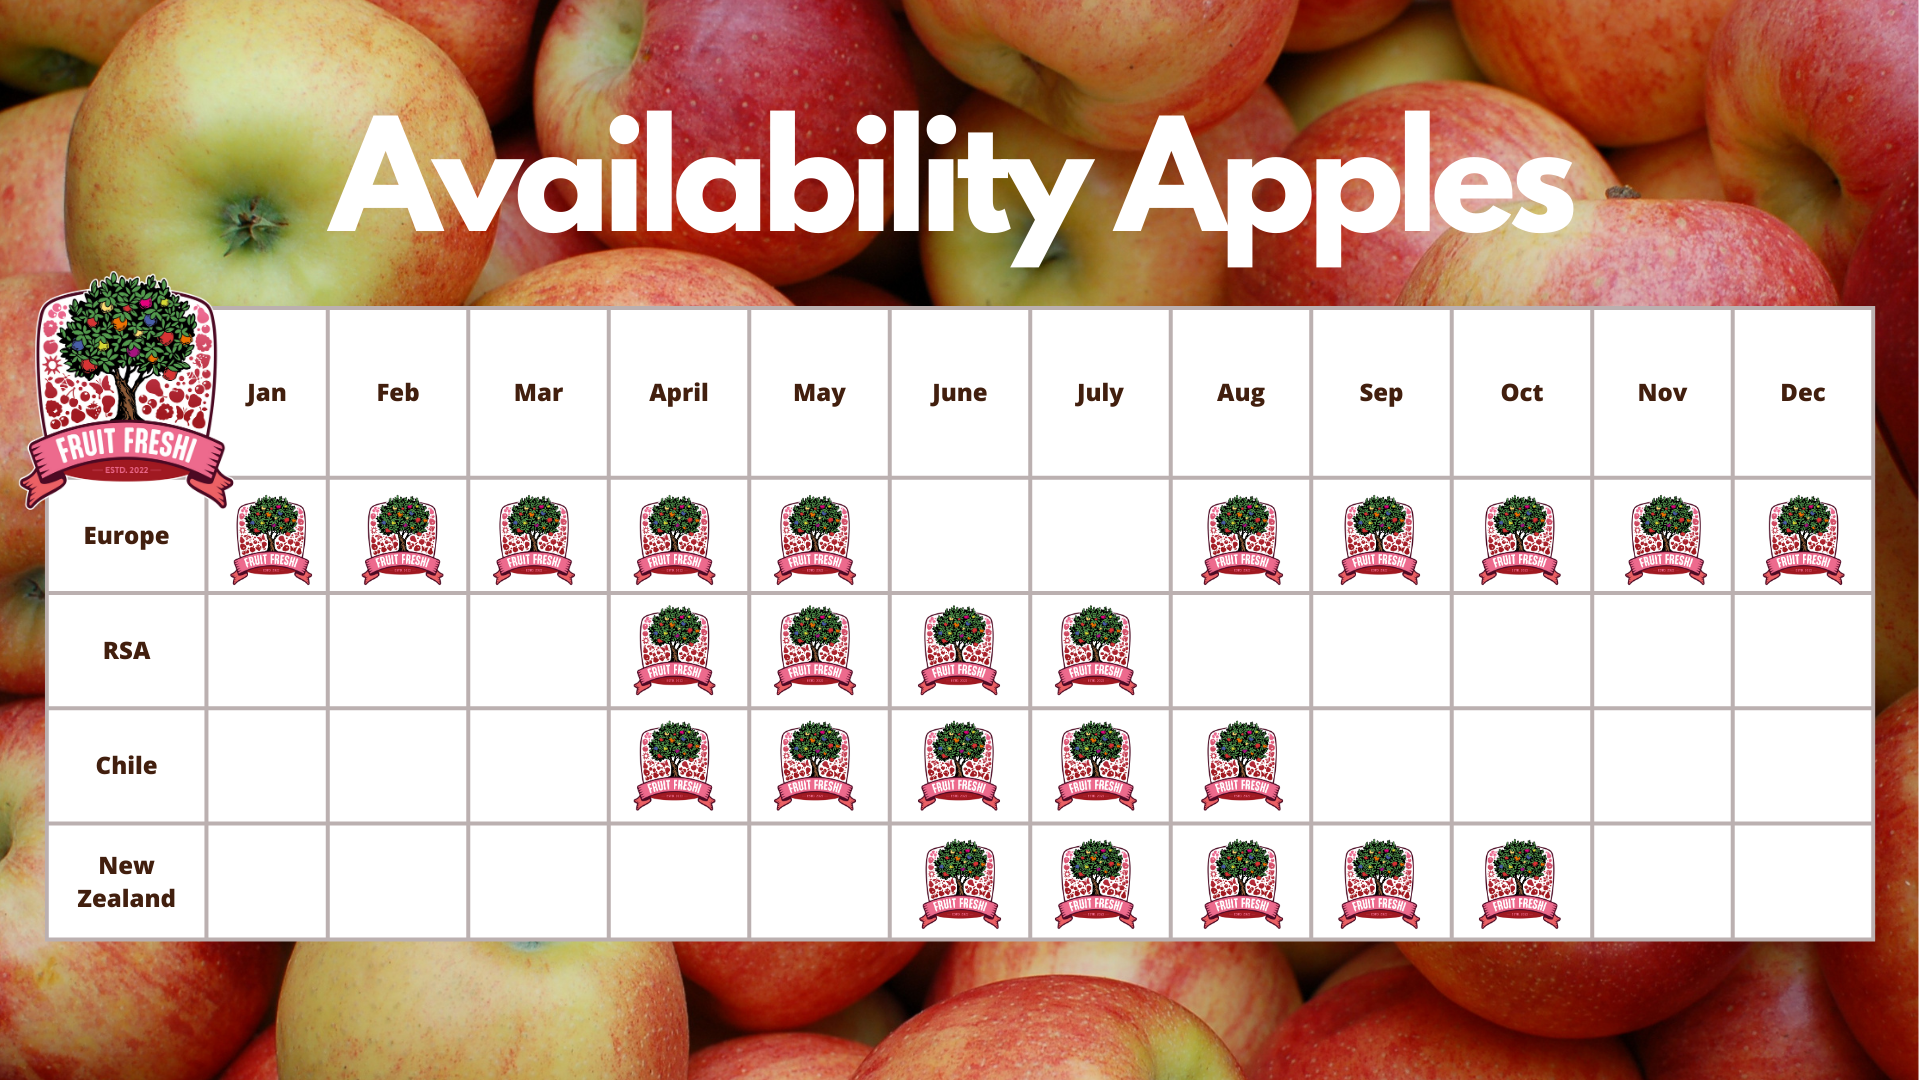 Availability Apples Fruit Freshi